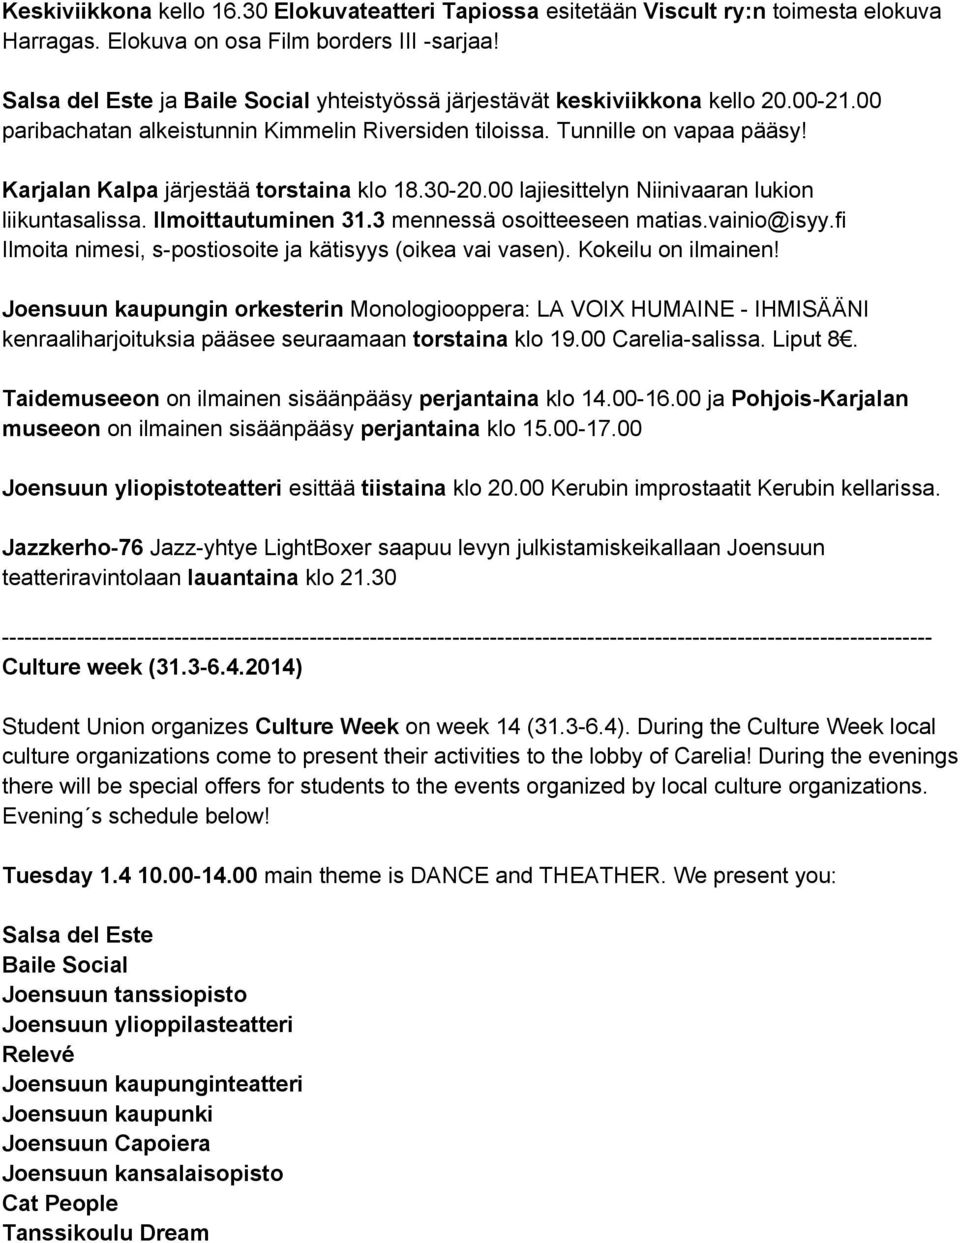 Karjalan Kalpa järjestää torstaina klo 18.30-20.00 lajiesittelyn Niinivaaran lukion liikuntasalissa. Ilmoittautuminen 31.3 mennessä osoitteeseen matias.vainio@isyy.